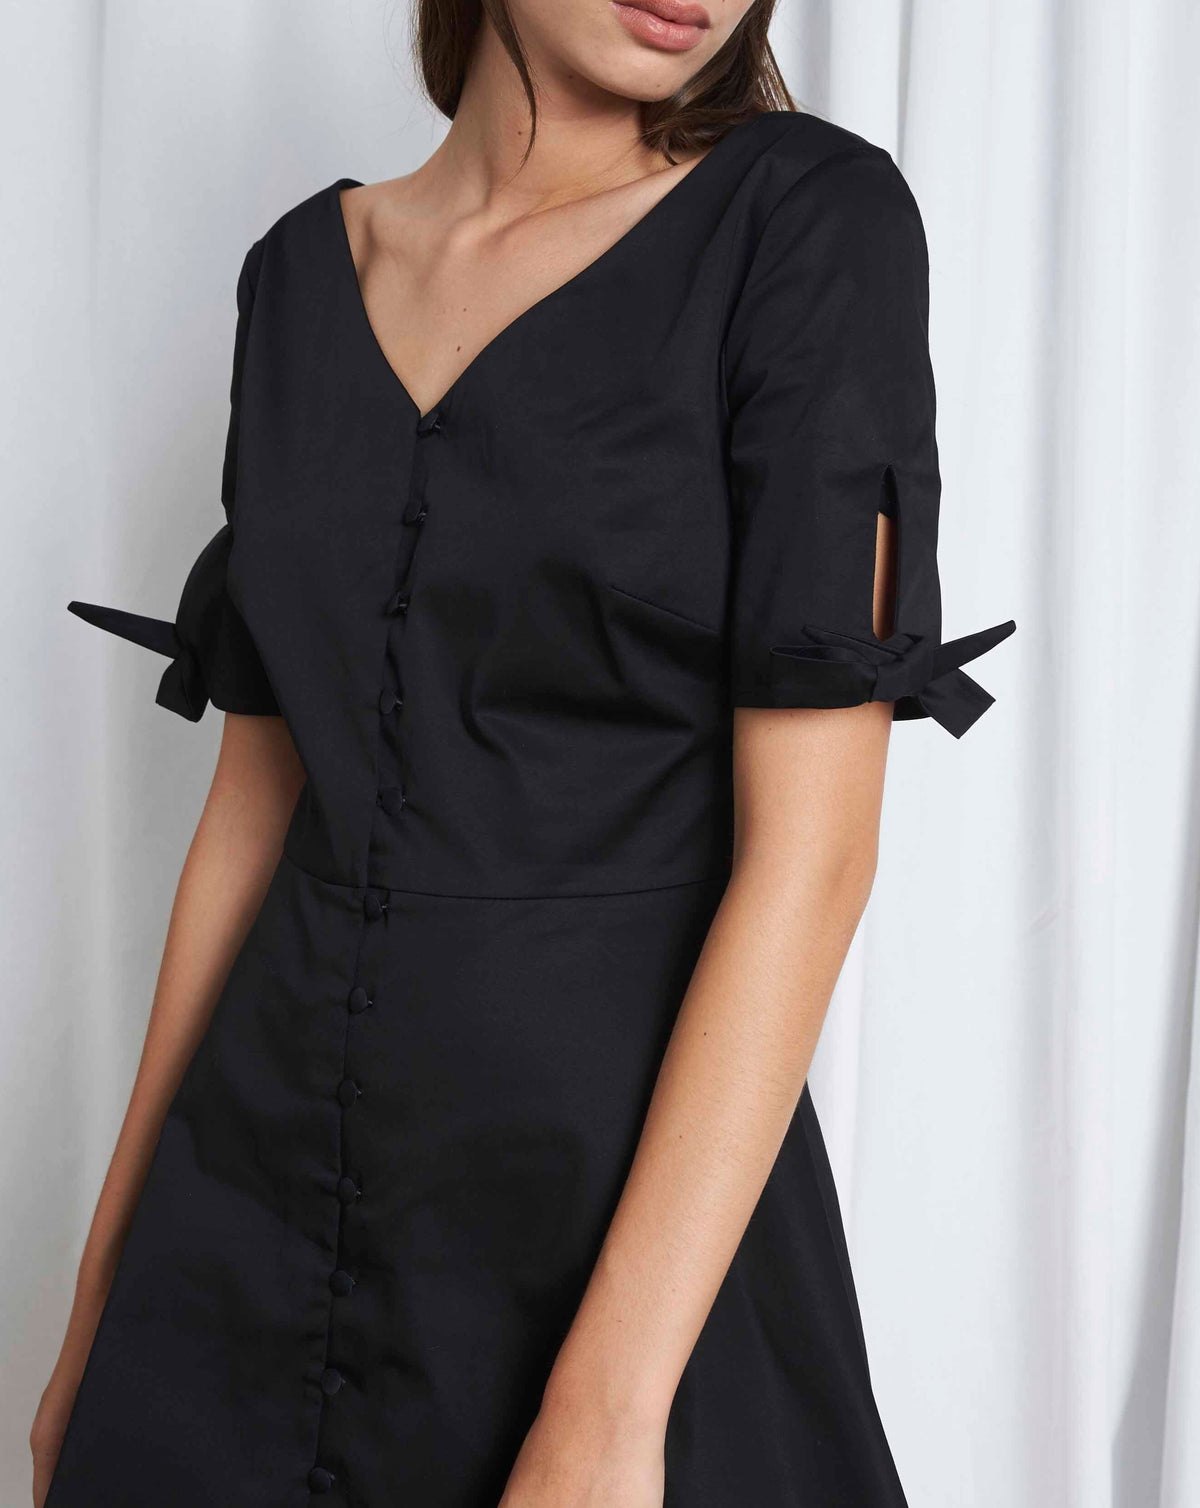 ORPHÉE - Short buttoned dress in Cotton Black Dress Fête Impériale